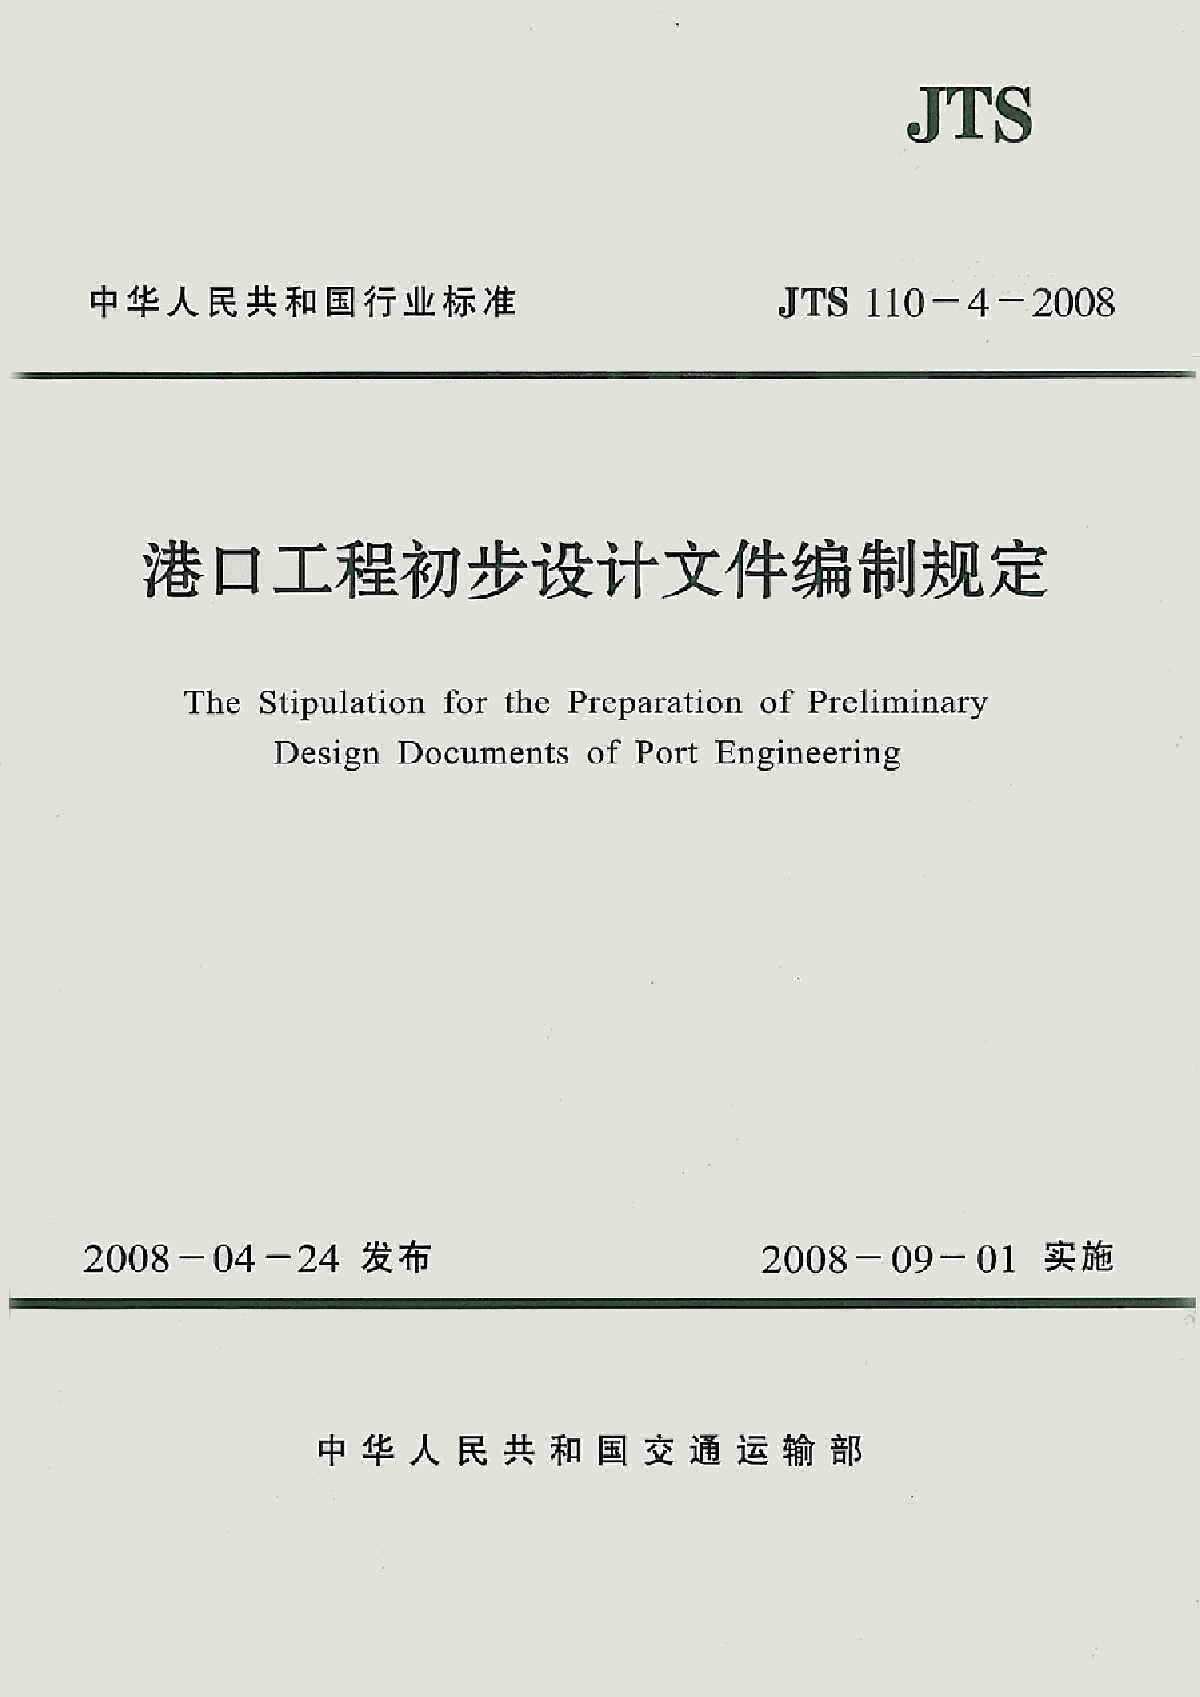 港口工程初步设计文件编制规定(JTS110-4-2008)